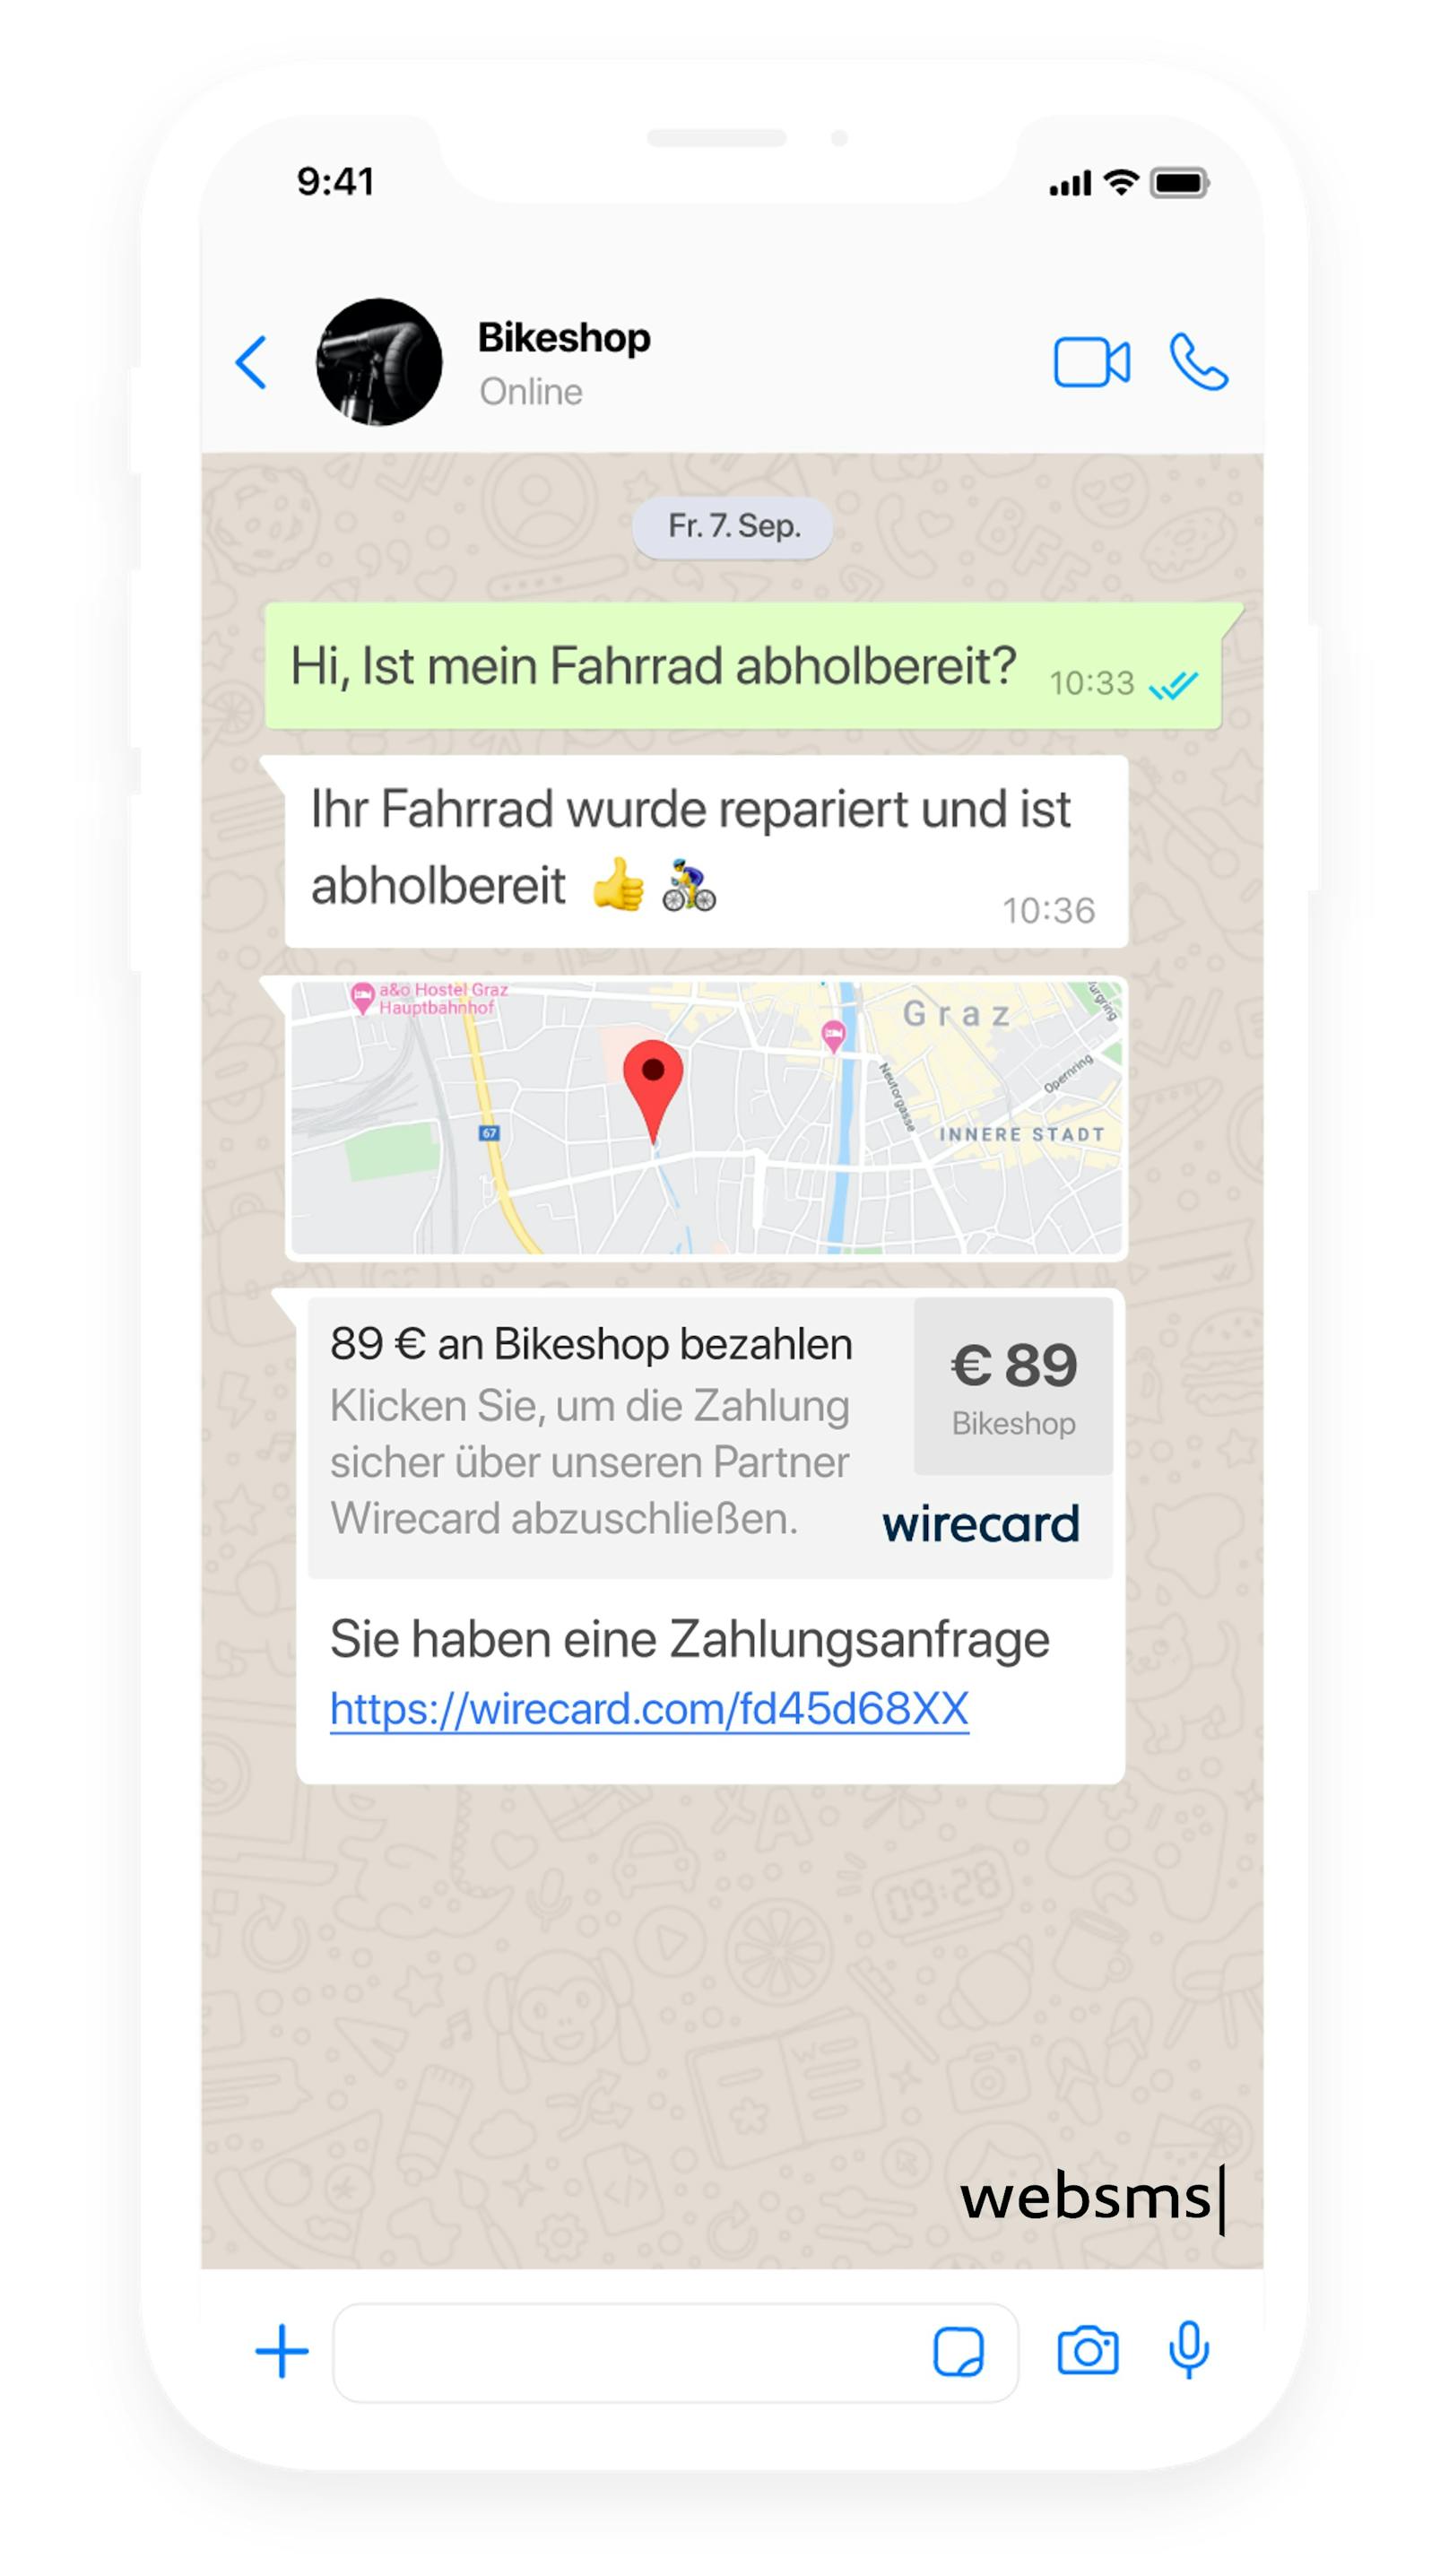 websms und Wirecard ermöglichen smartes Einkaufen via SMS und Messenger.